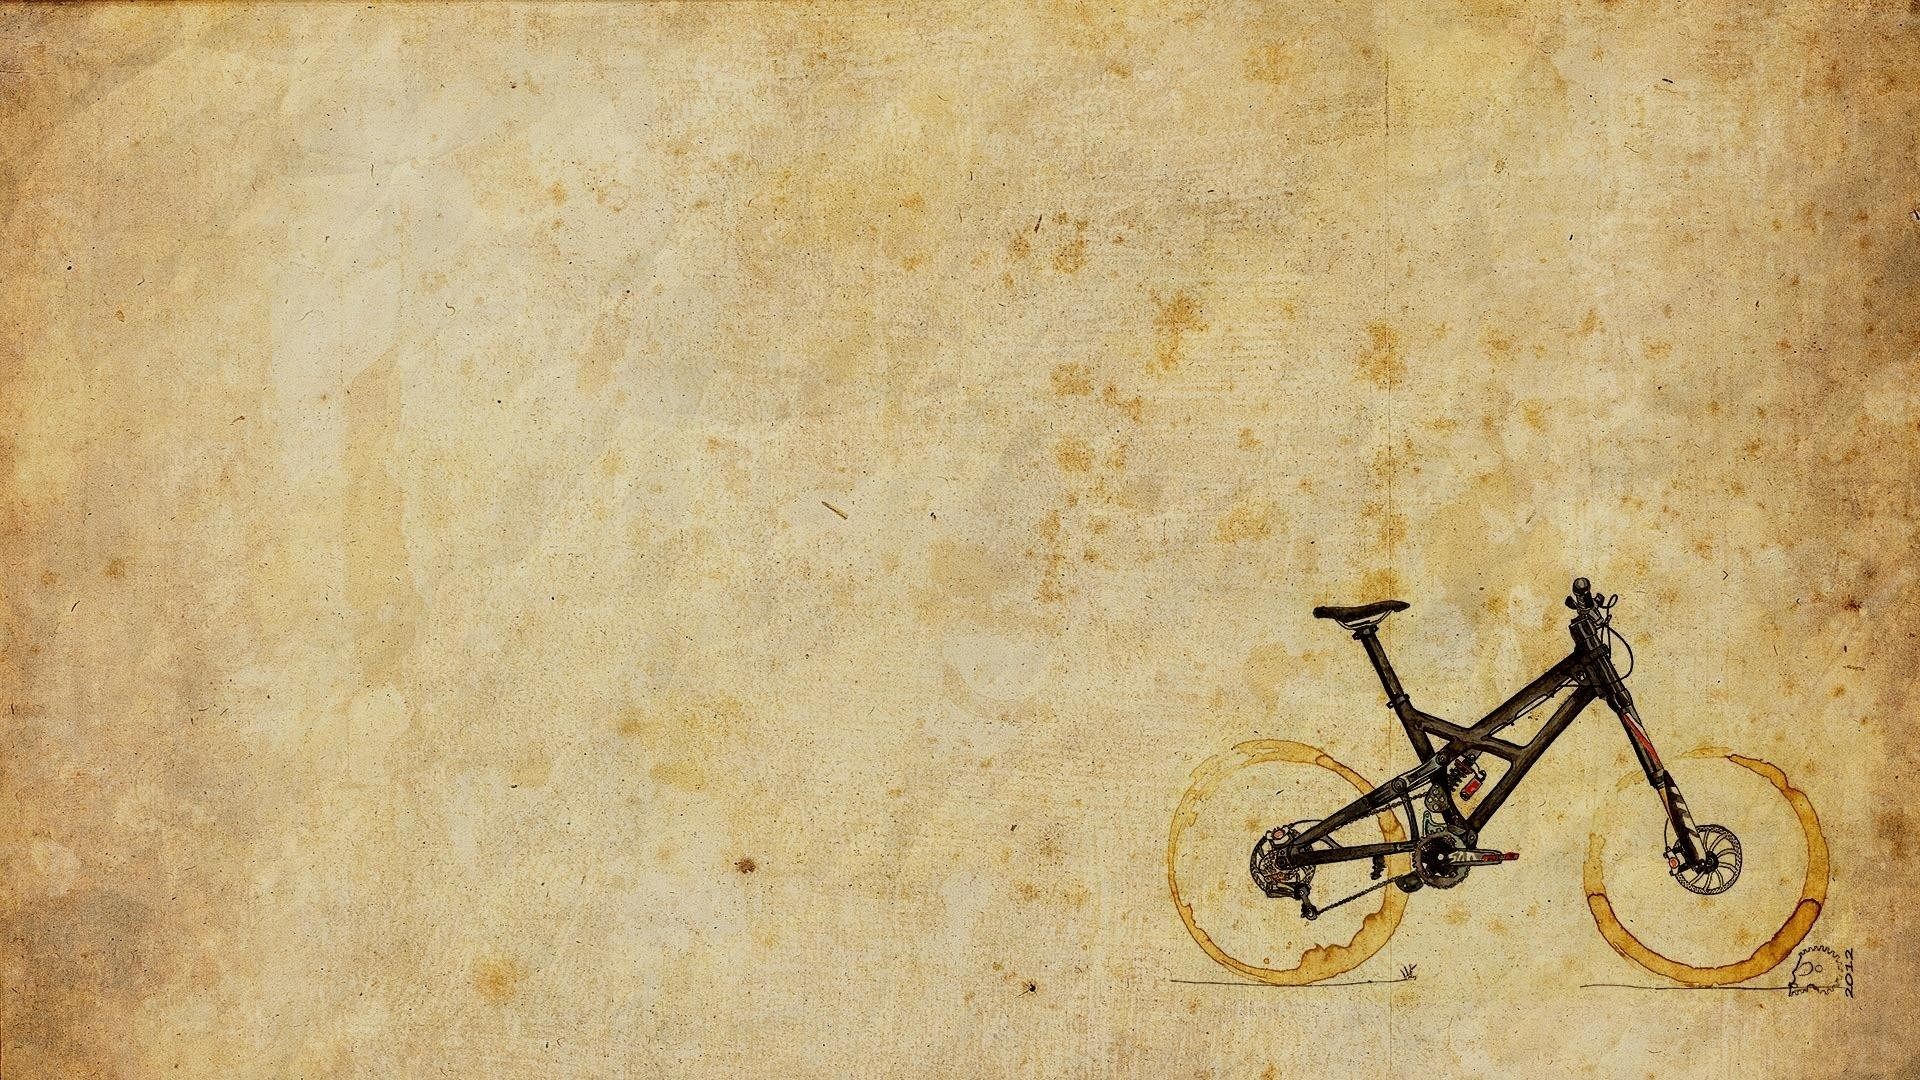 1920x1080 mountain-bike-art-hd-wallpaper - Magic4Walls.com